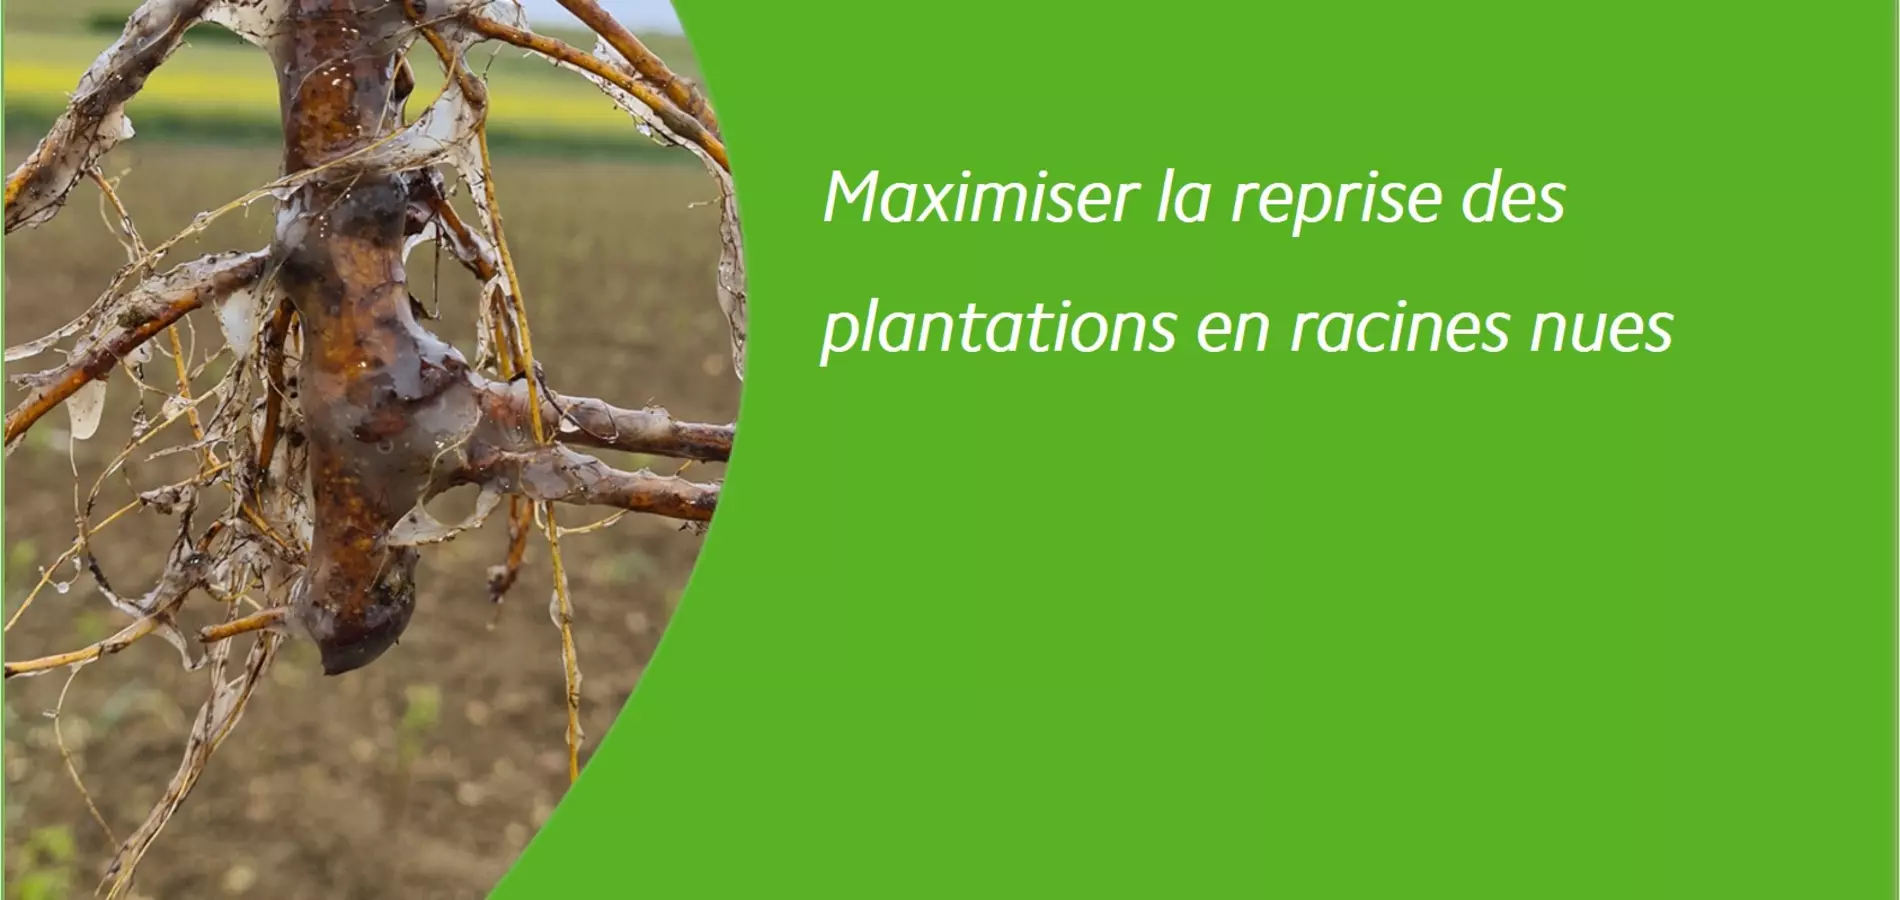 PraliGel Flo pralinage biostimulant pour maximiser la reprise plantations racines nues